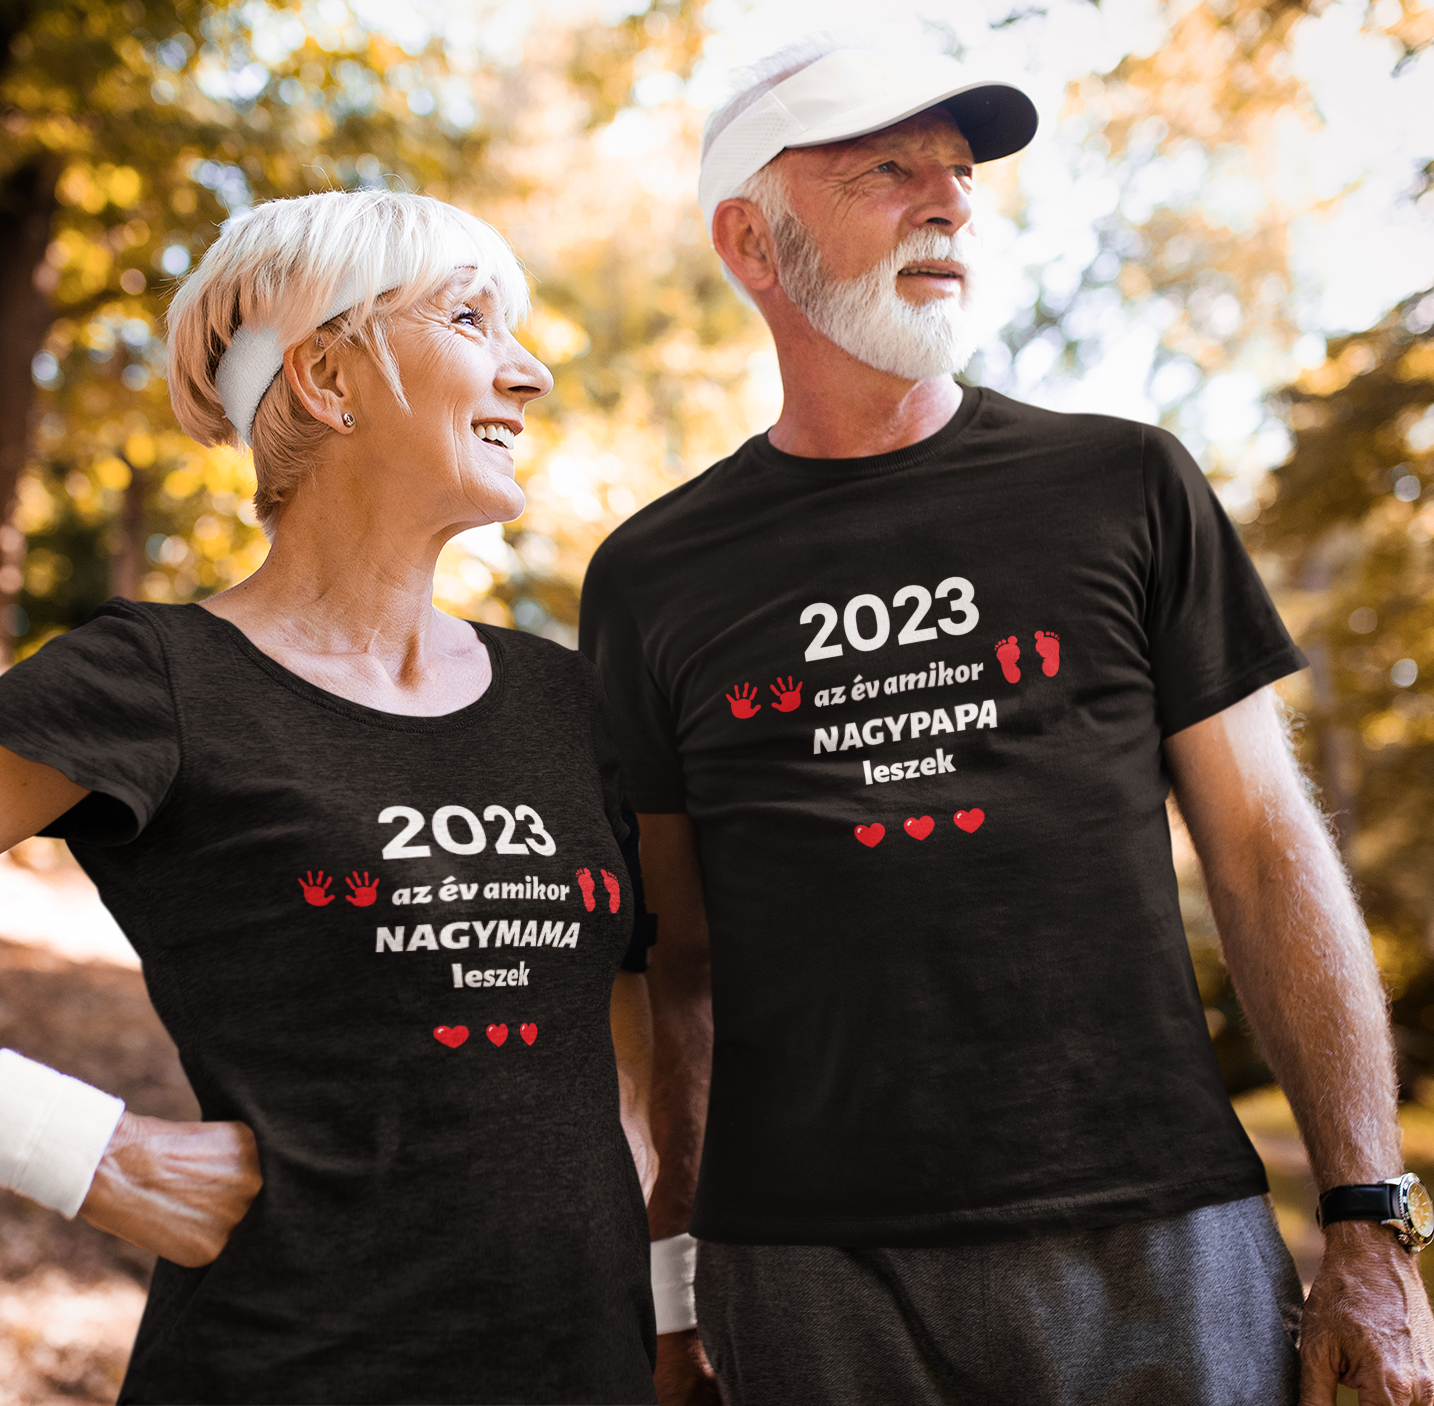 2023 az év amikor nagymama leszek/2023 az év amikor nagypapa leszek p (2db póló)